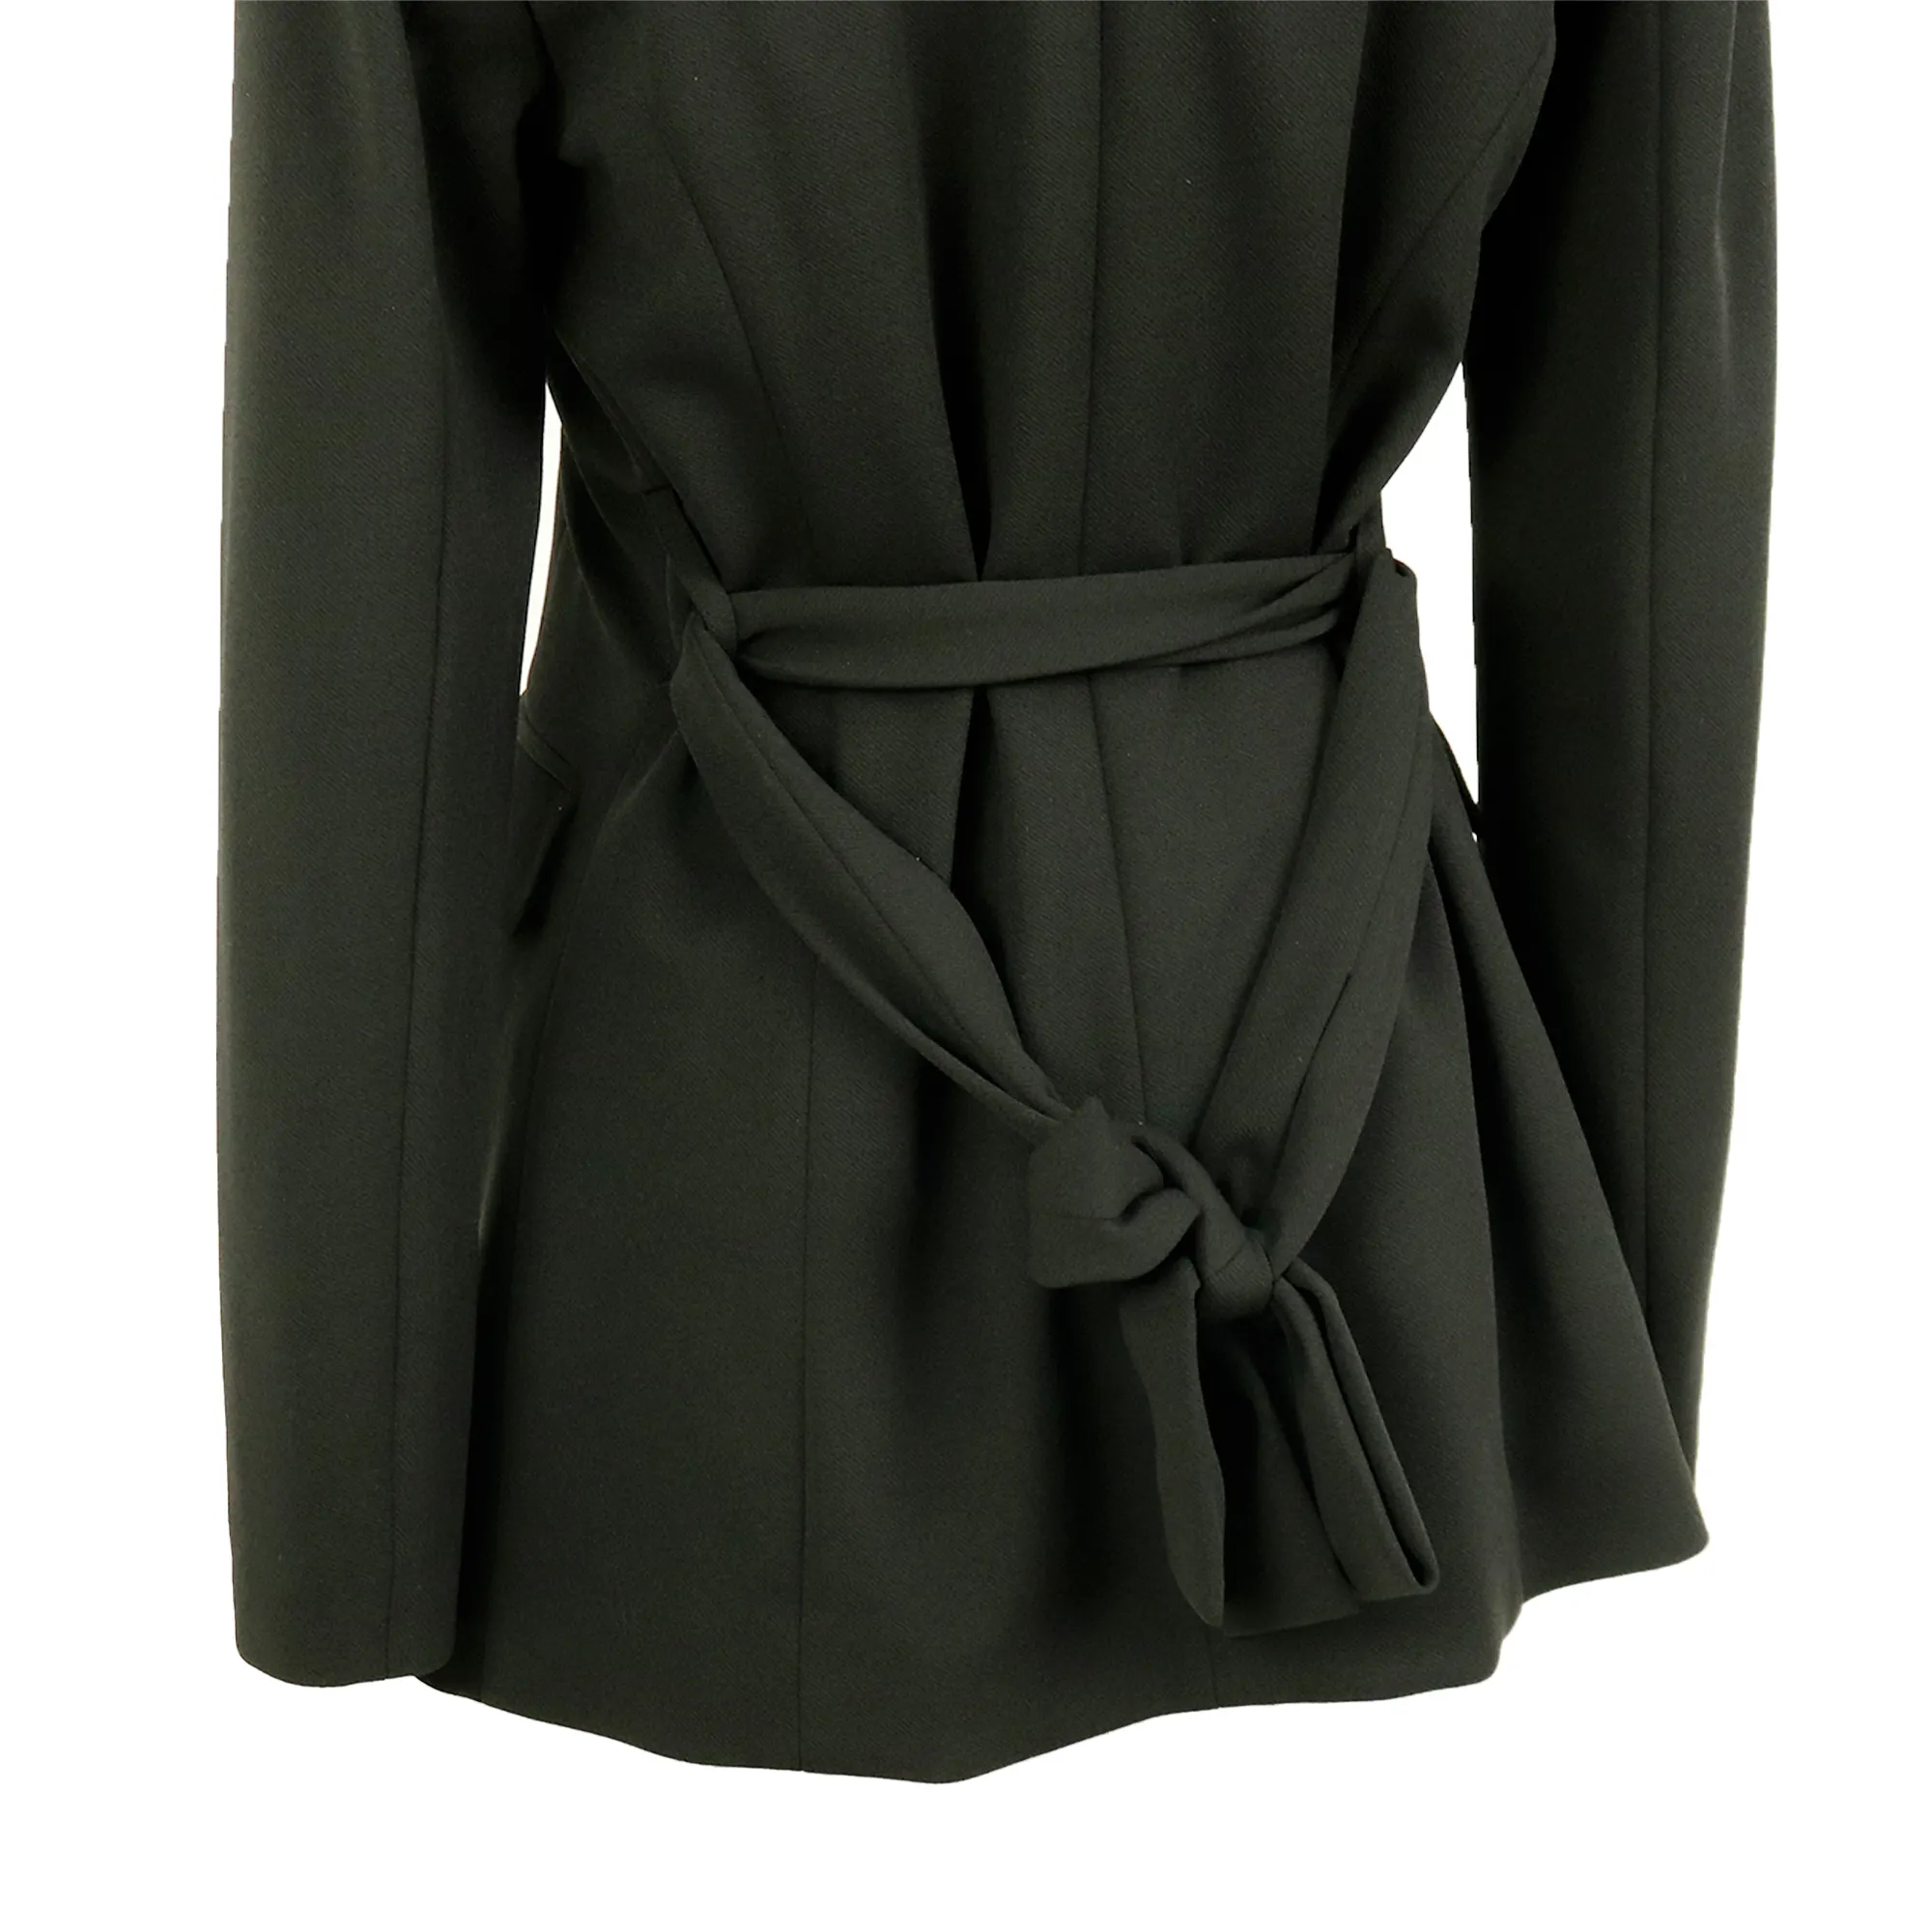 Custom autumn/spring ladies dresses elegant women coat black formal luxury long sleeves business wear work casual suit